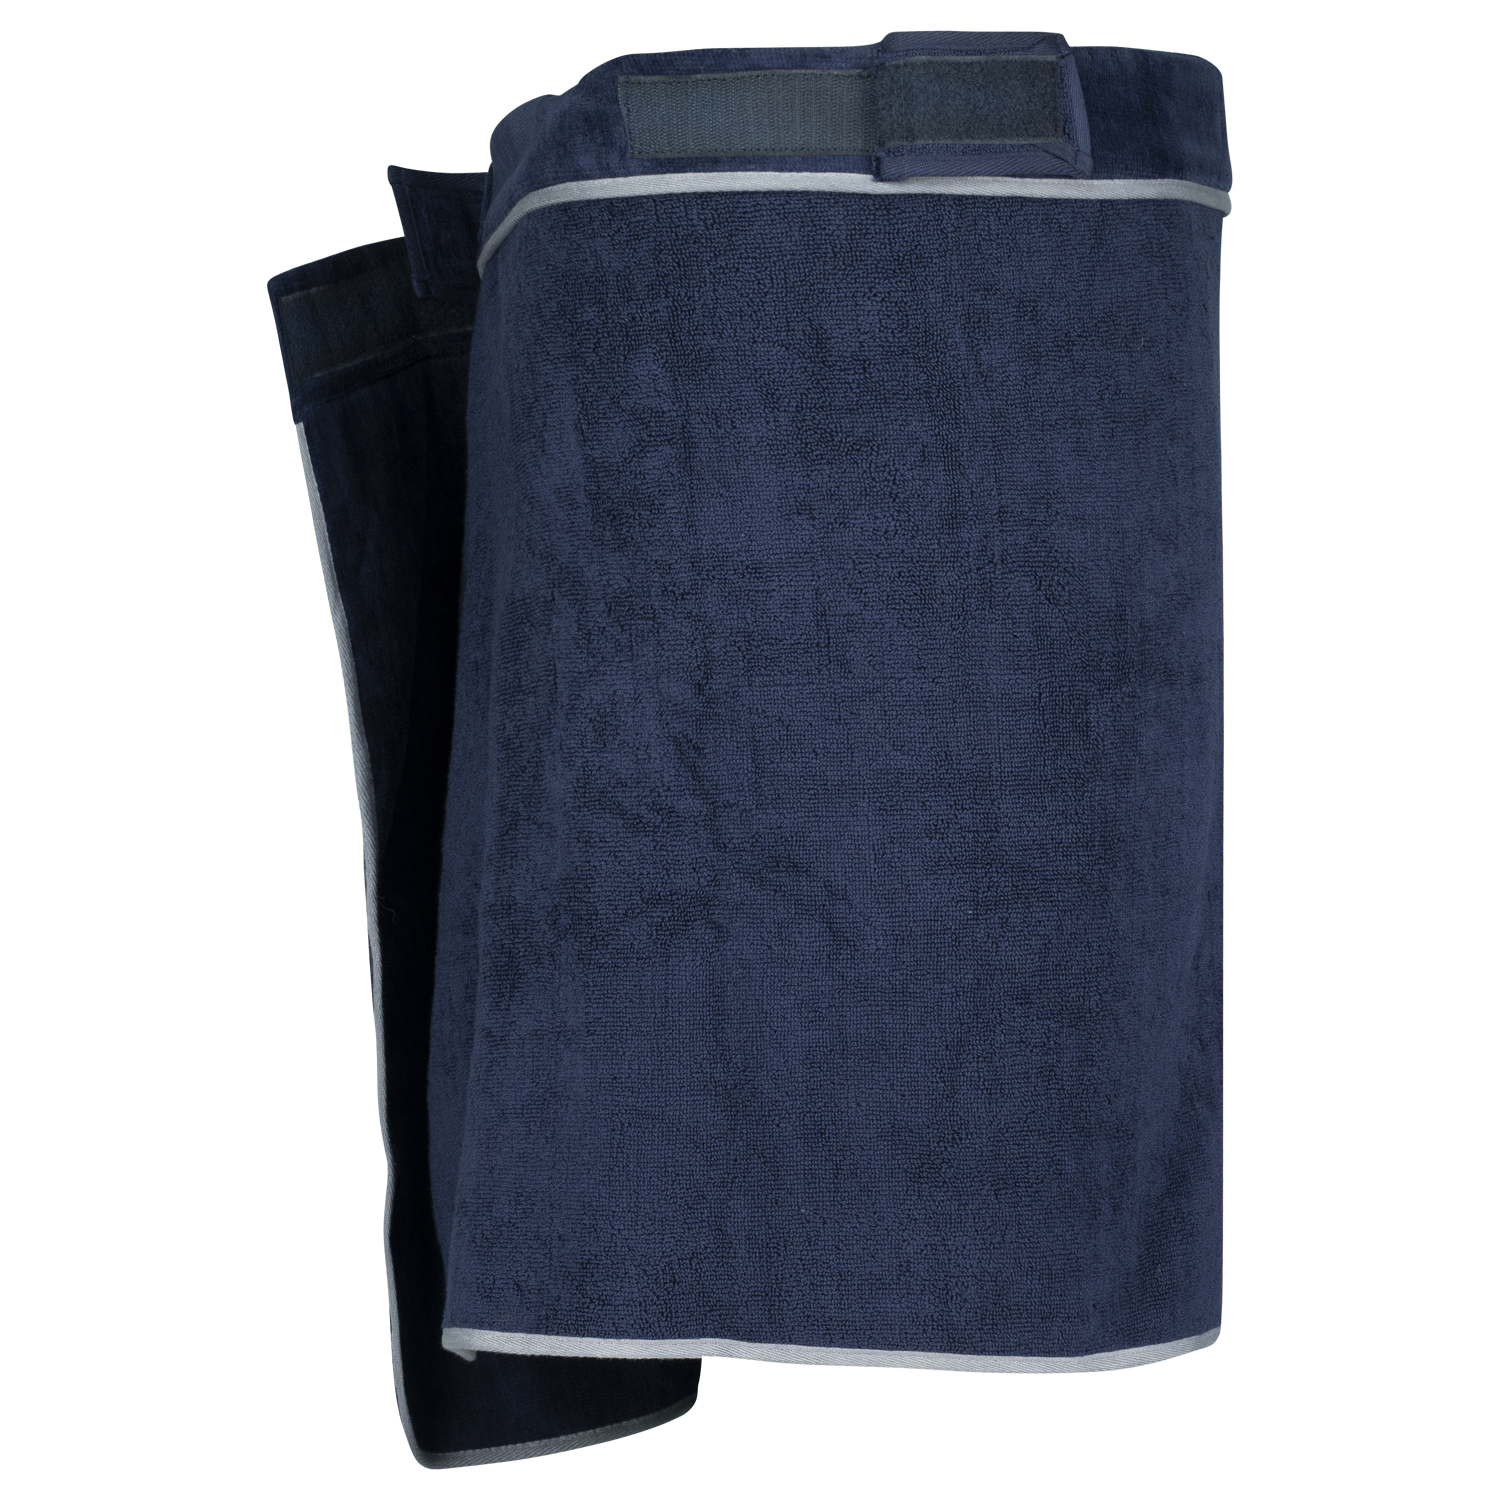 ADAMO XXL-Sauna Kilt dunkelblau Modell "LATHI" für Herren in Übergrößen mit Klettverschluss